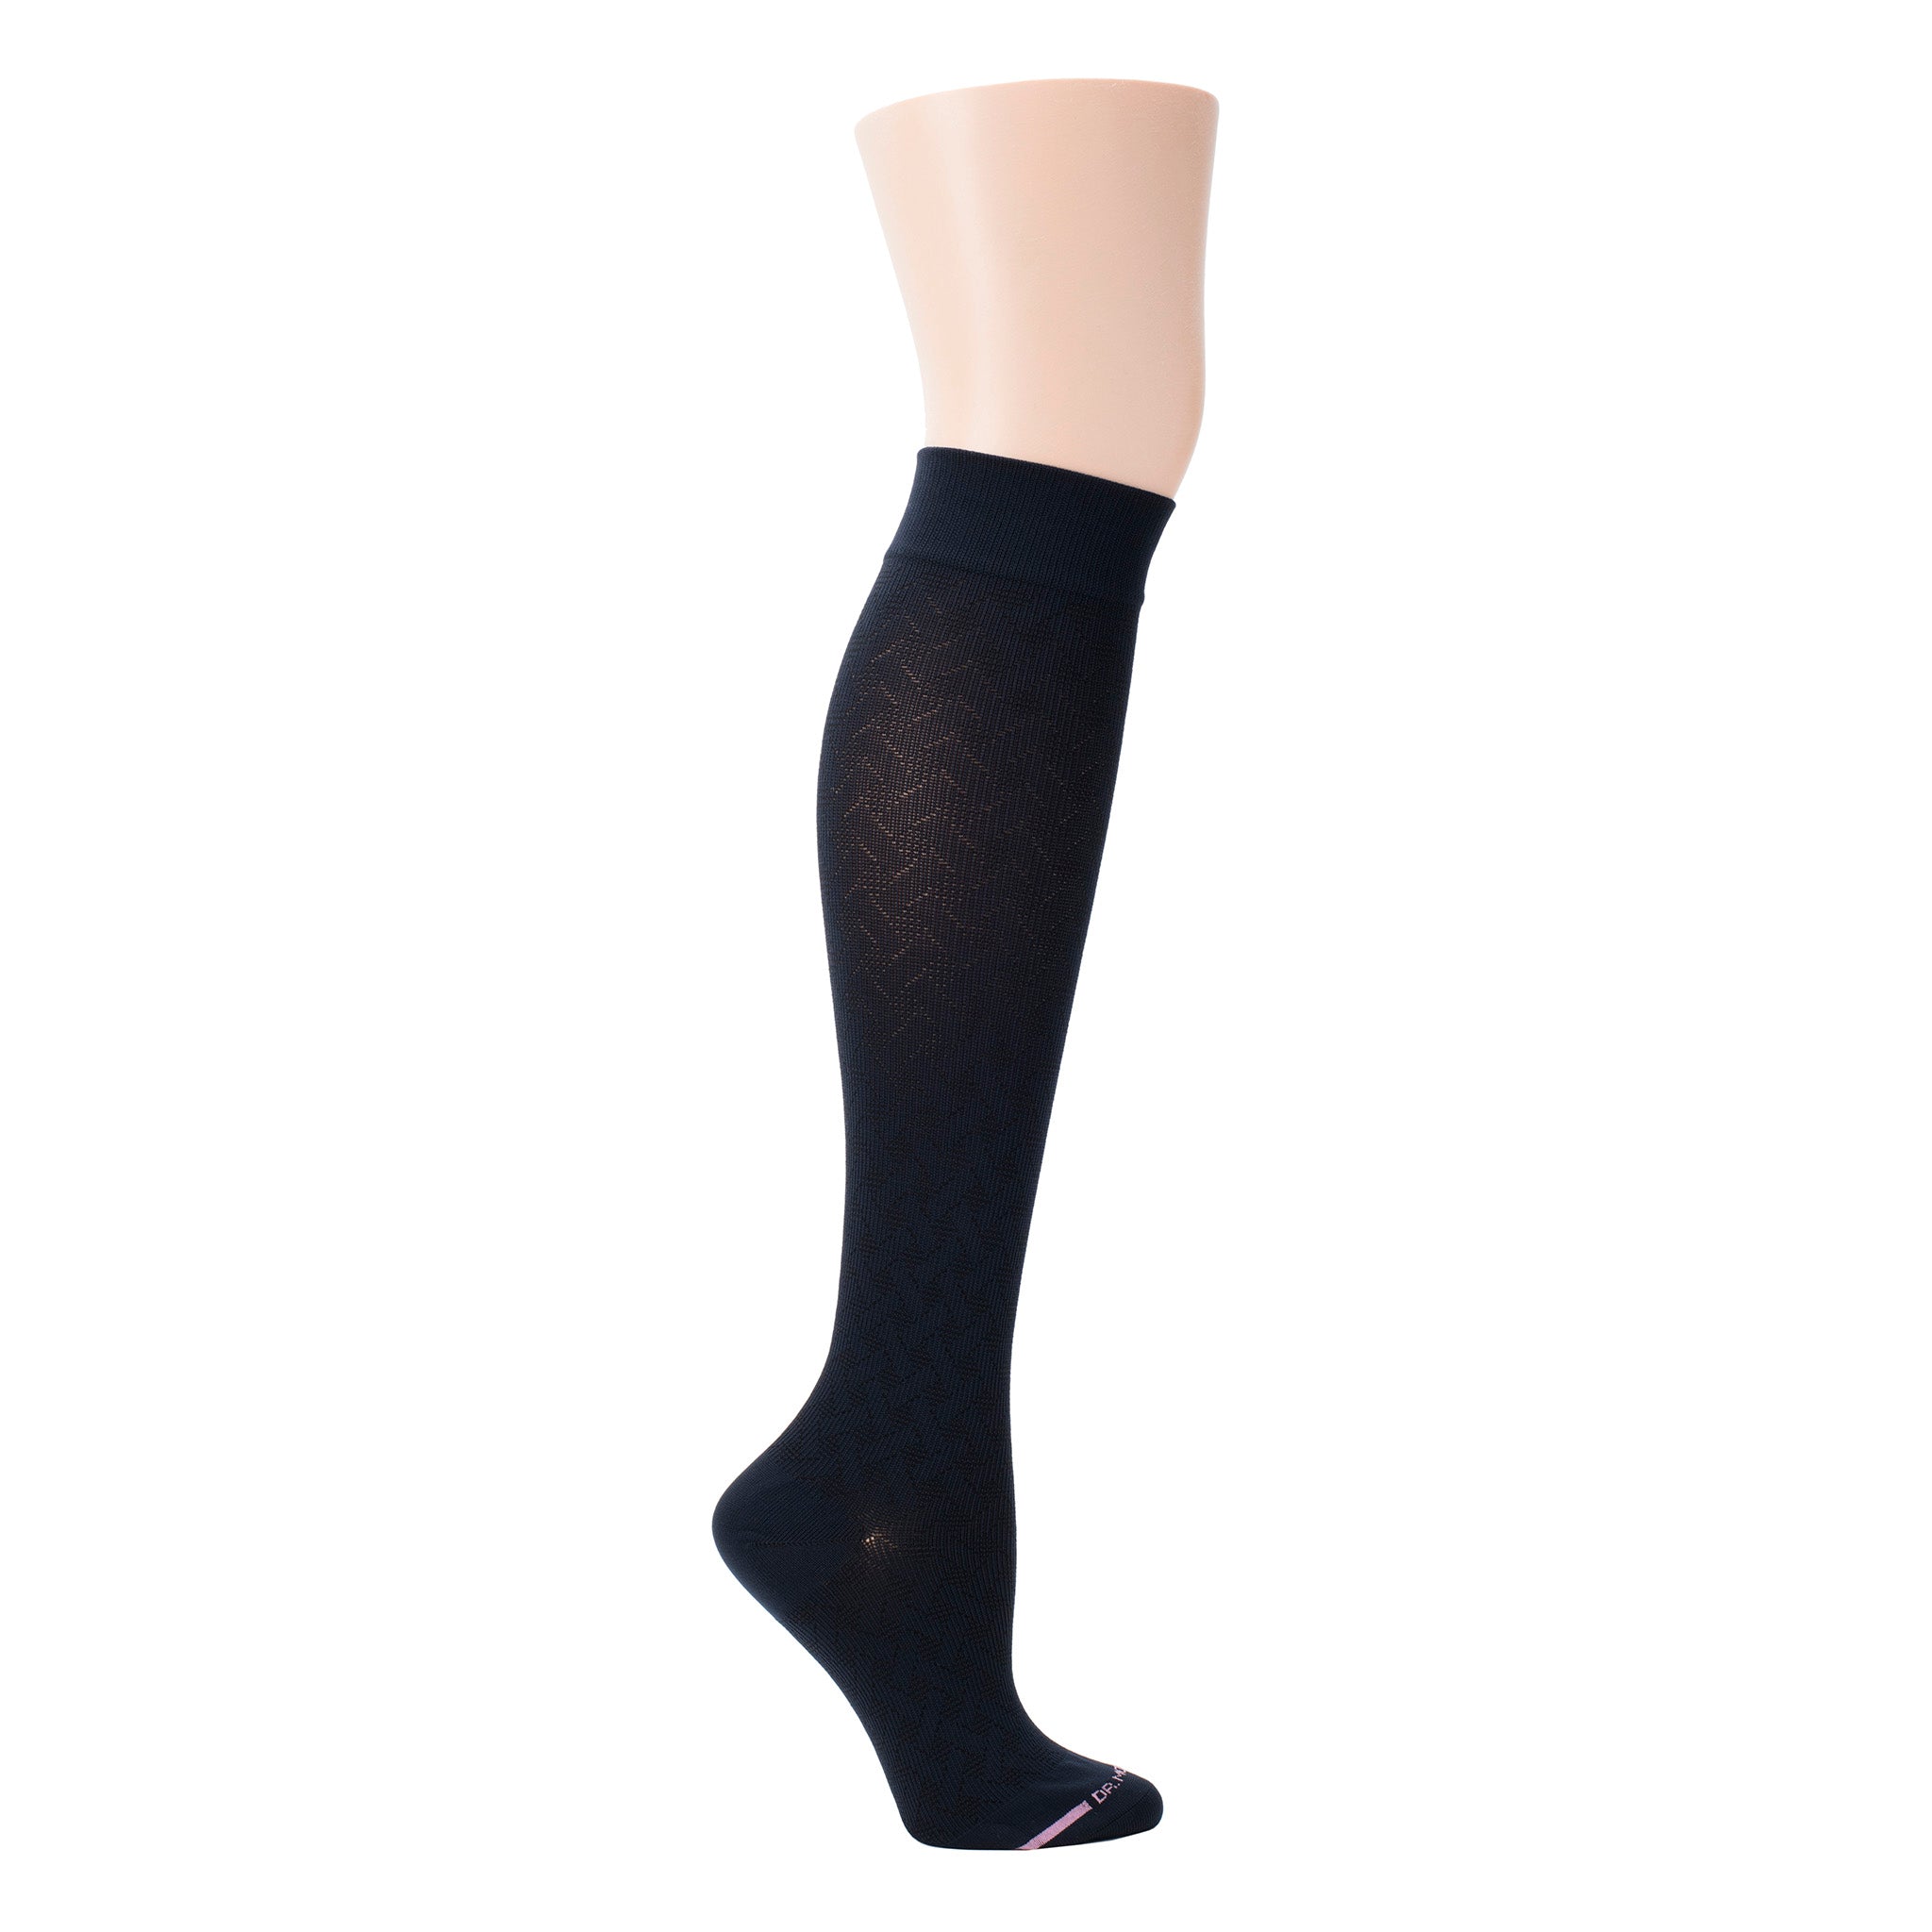 Basket Weave | Knee-High Compression Socks For Women